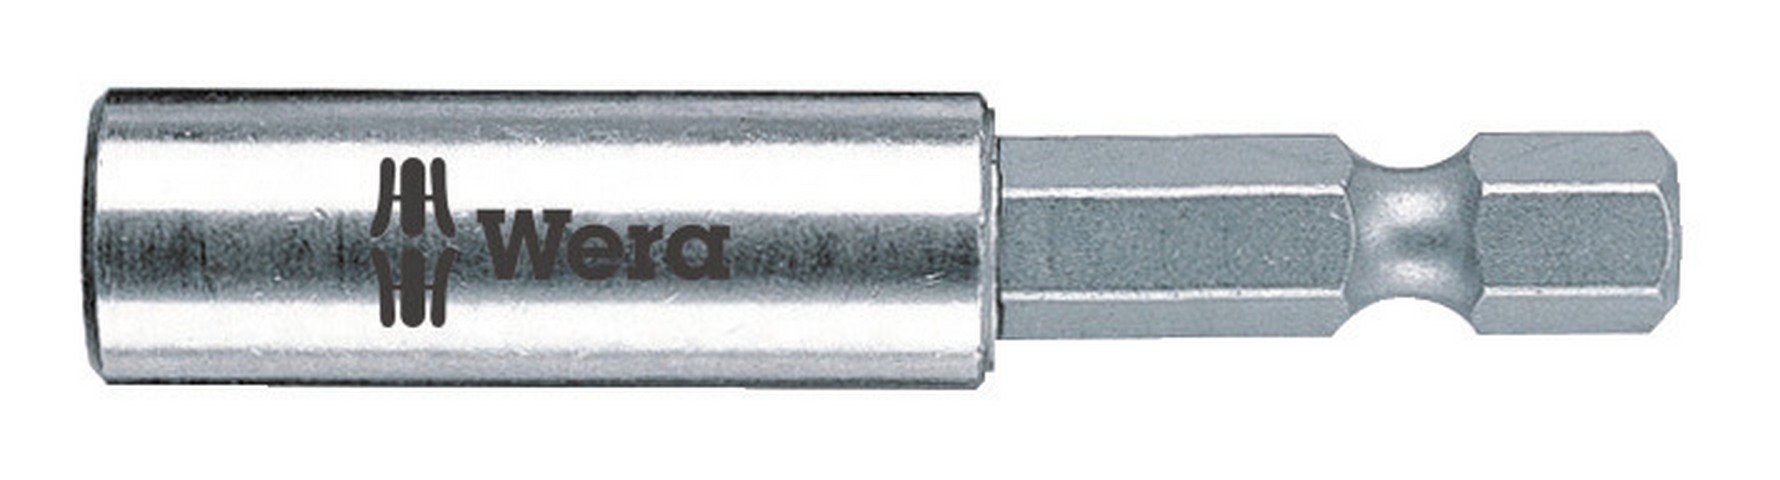 Wera Bithalter, 1/4" für 1/4" Bits Sprengring 300 mm